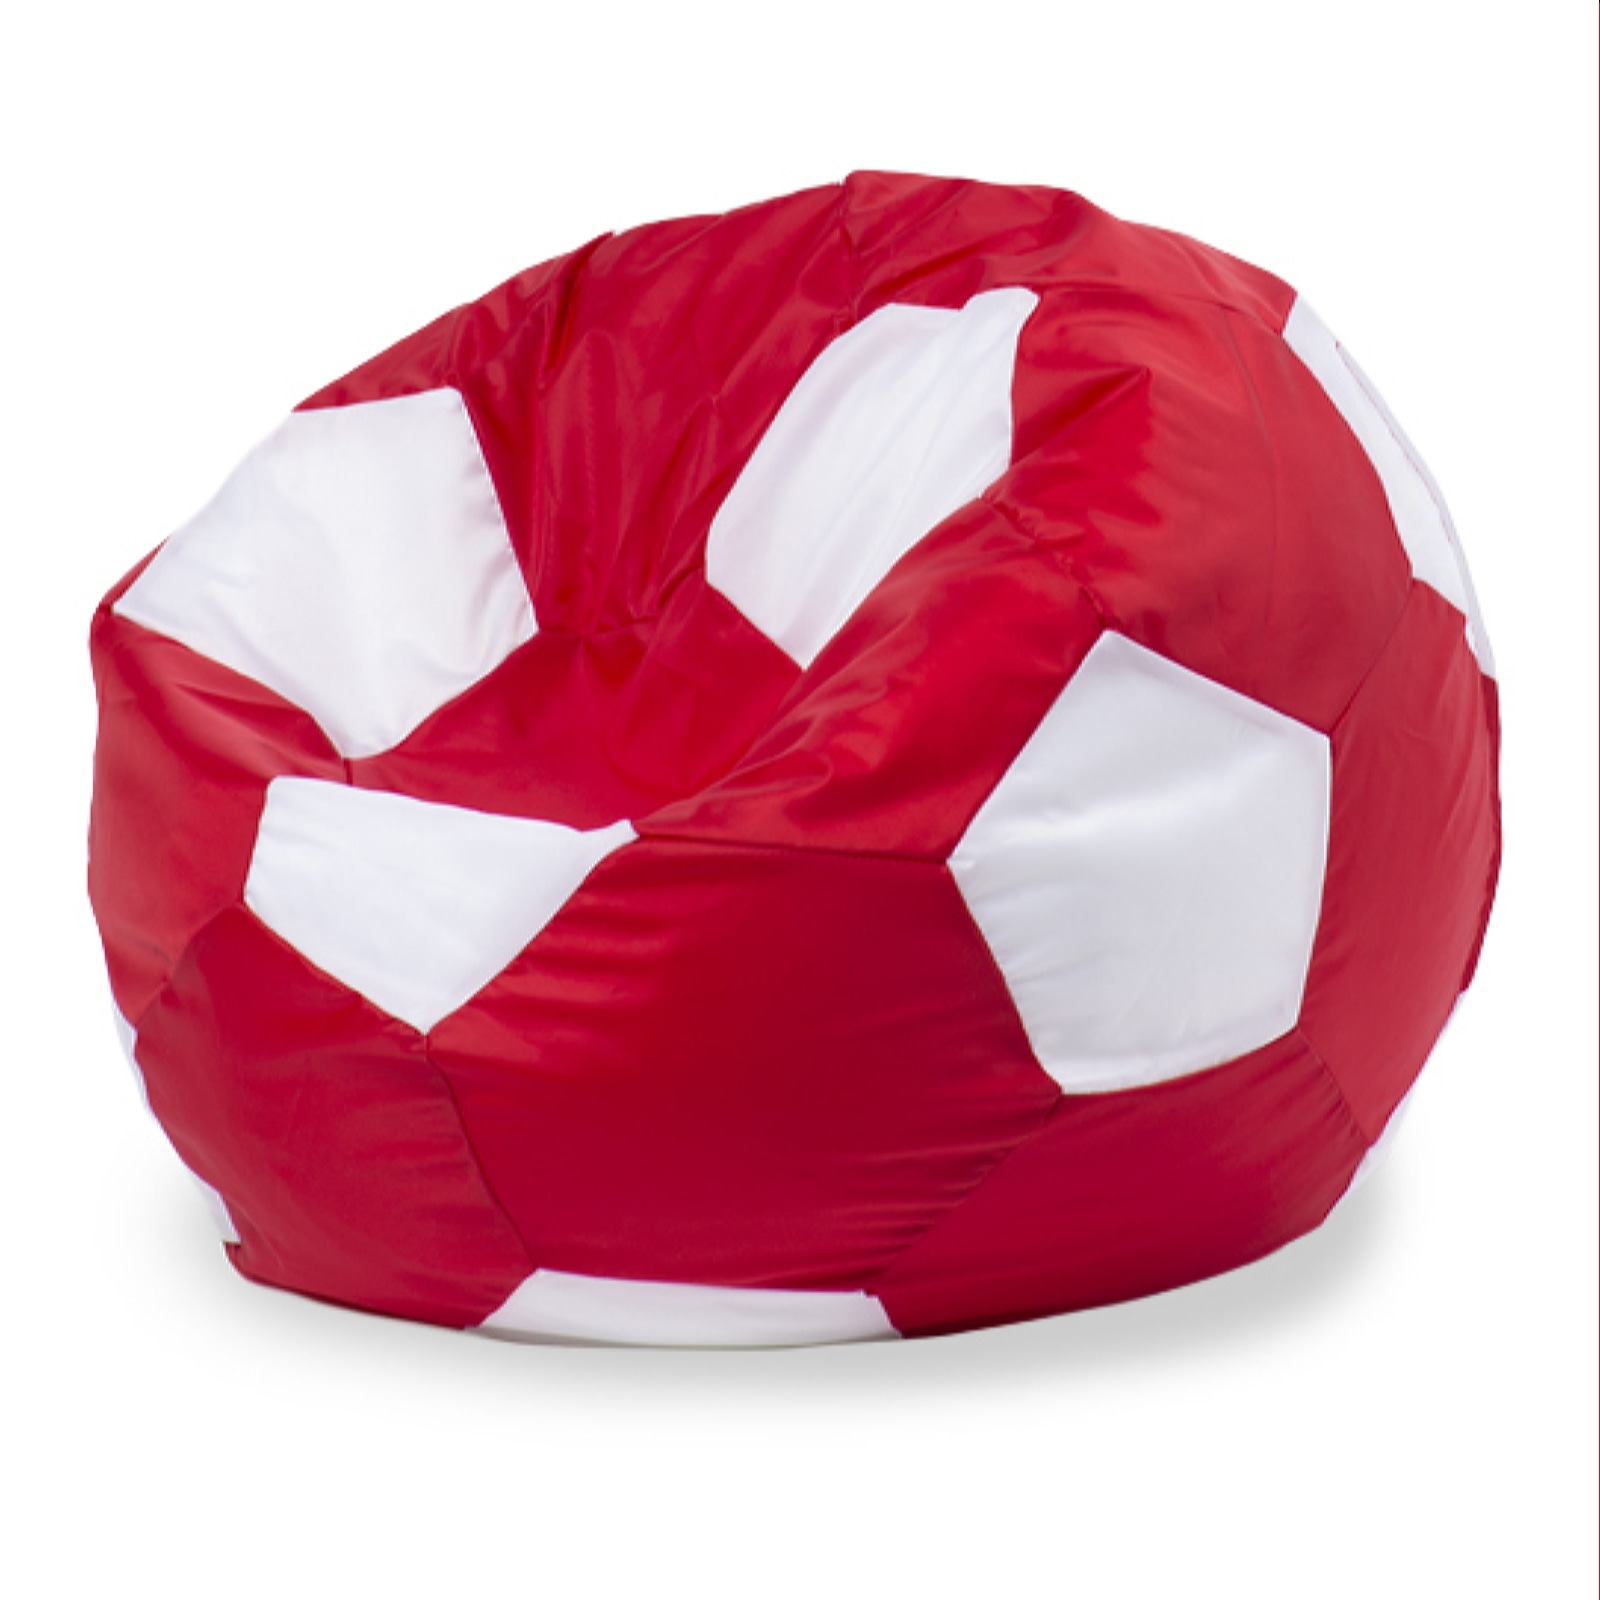 Кресло-мешок ПуффБери Мяч Оксфорд L, красный, белый